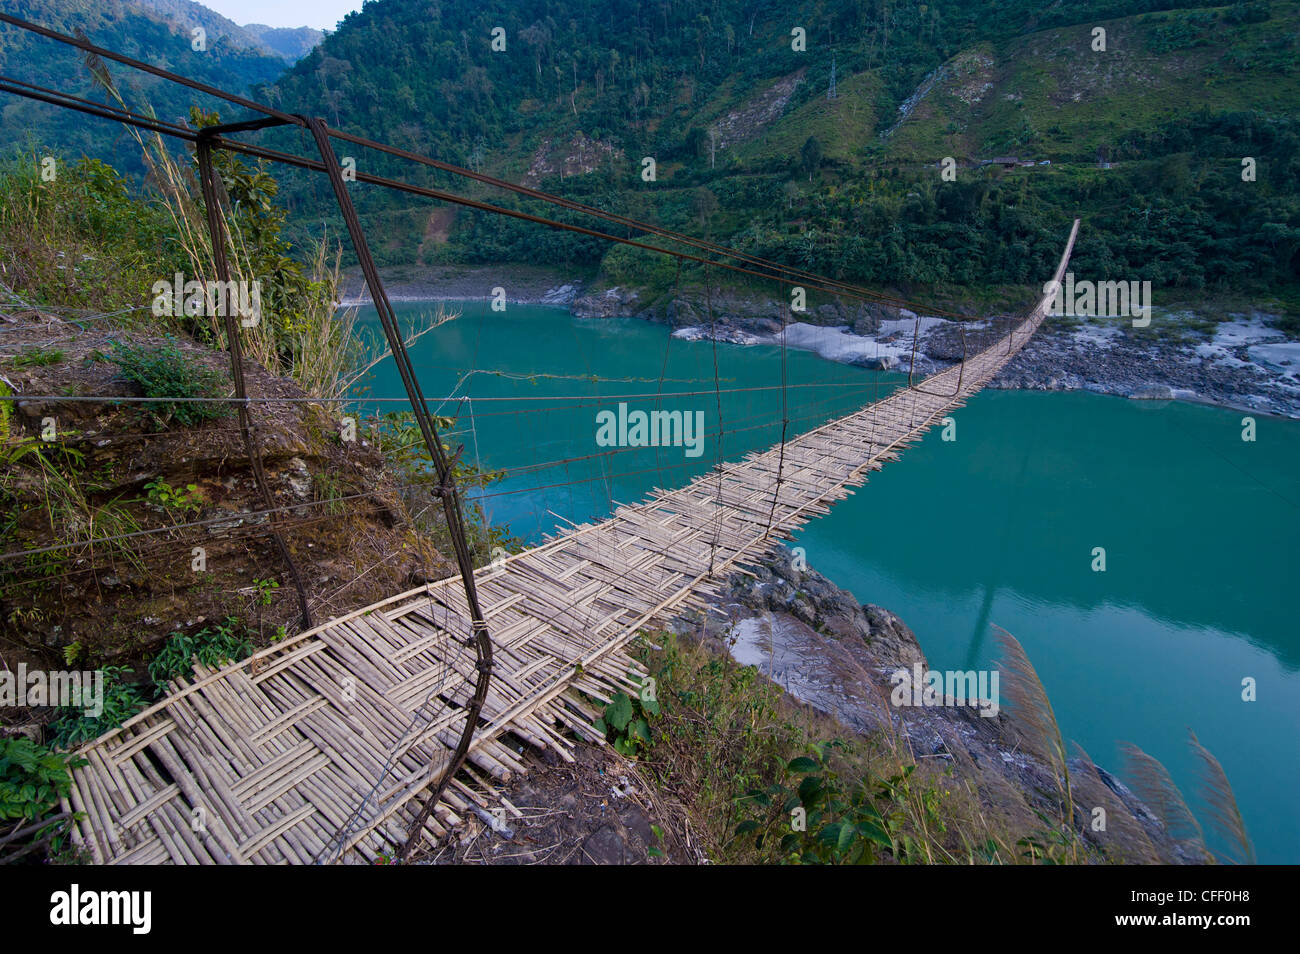 Riesige Hängebrücke, der Siang Fluss, Arunachal Pradesh, Nordost-Indien, Indien, Asien Stockfoto